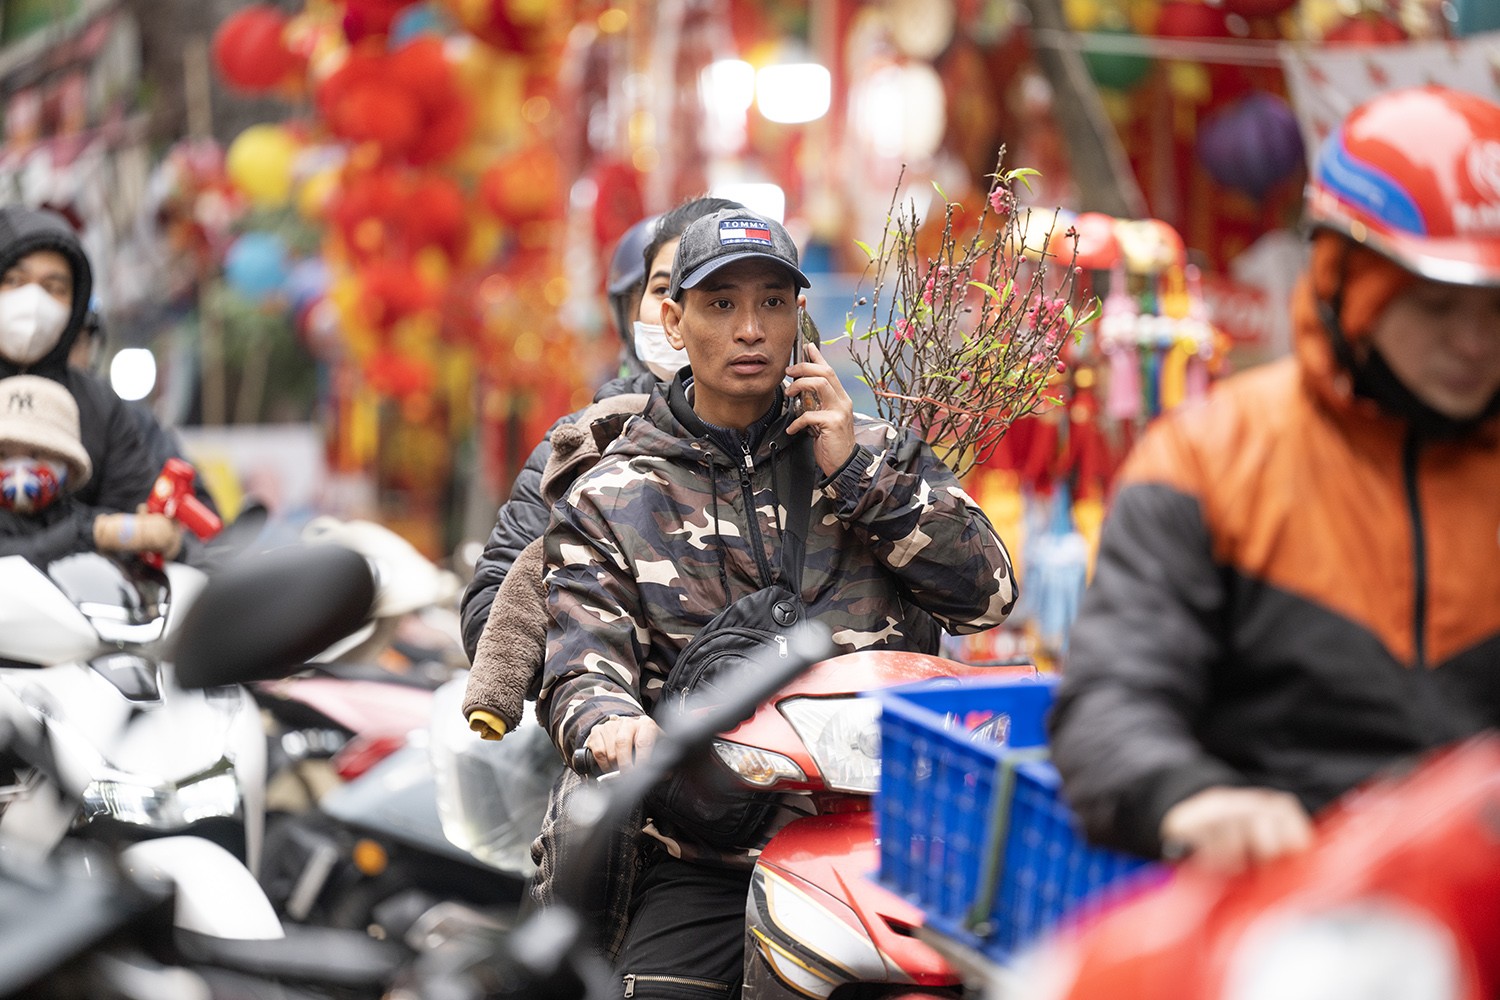 Chợ hoa Tết Hàng Lược trở thành một nét đặc trưng riêng trong văn hóa của người Hà Nội.